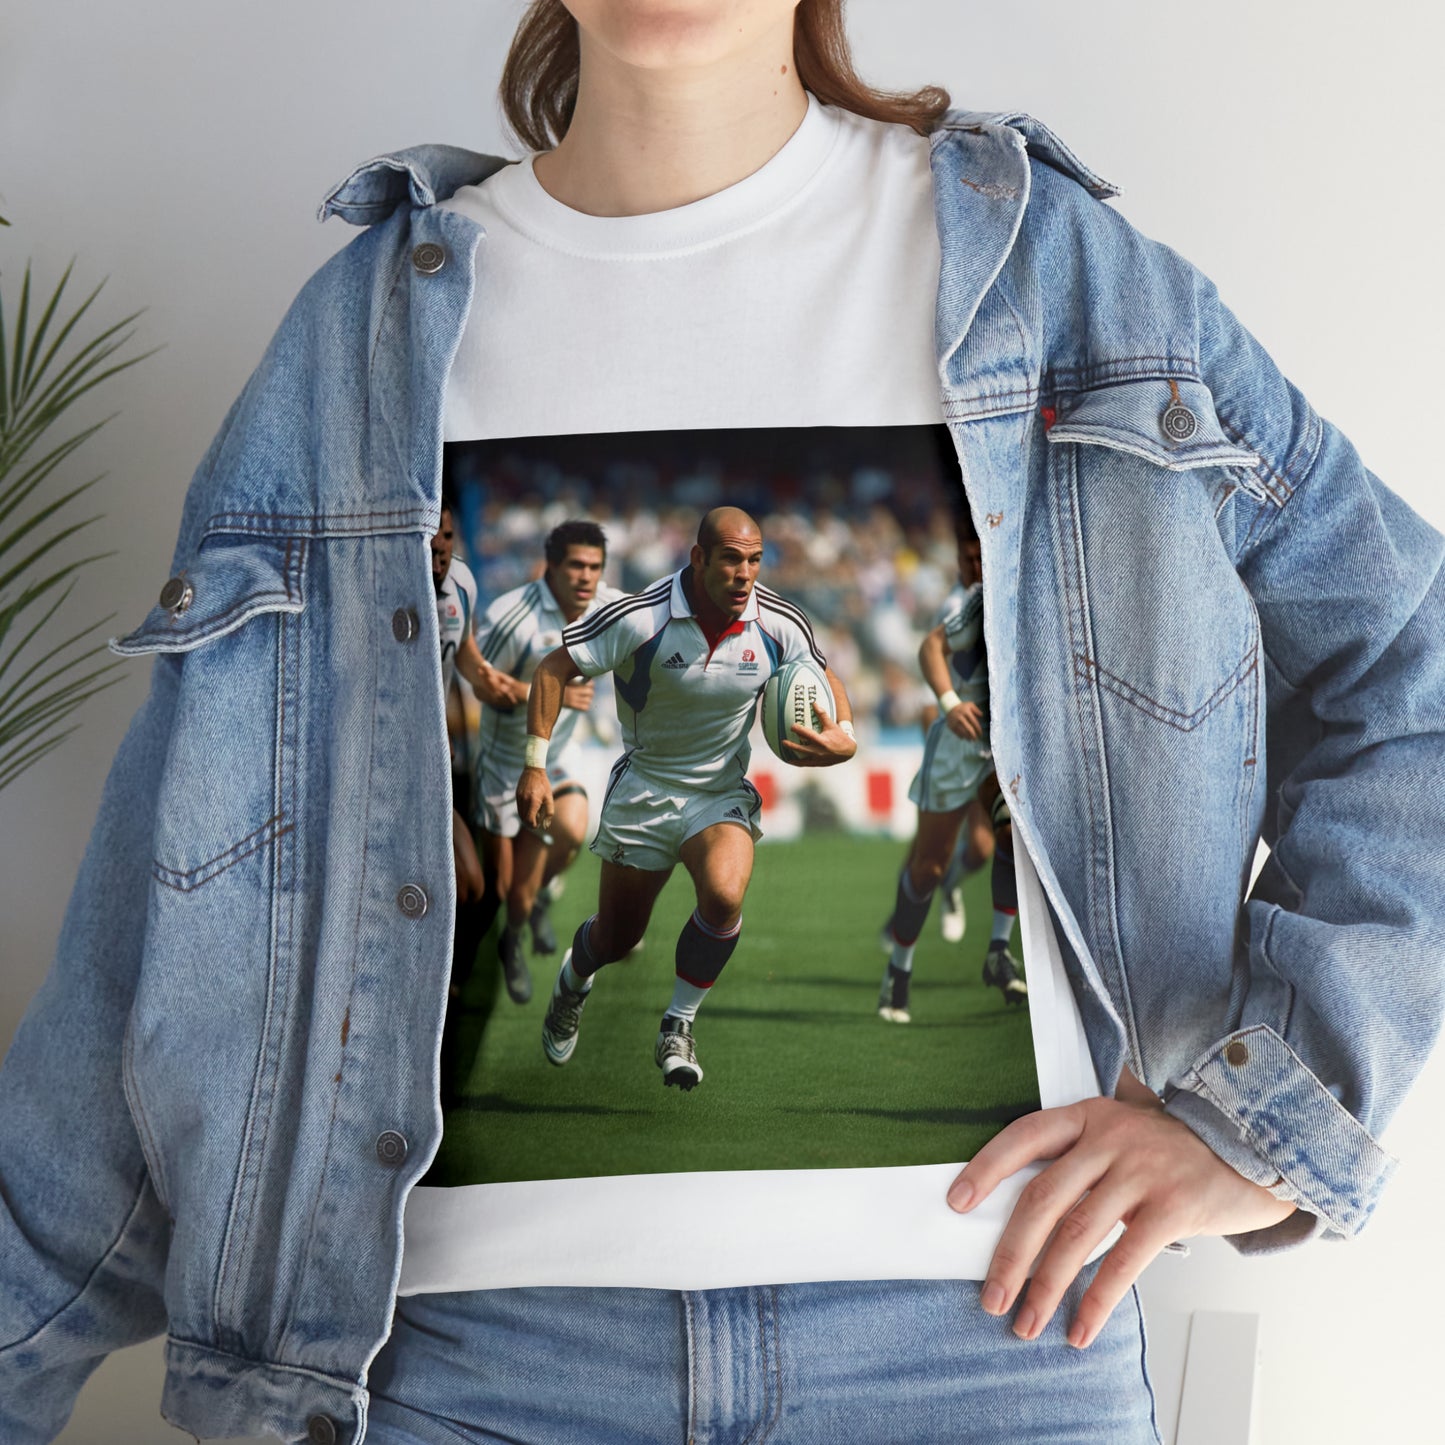 Zinedine Zidane - light shirts